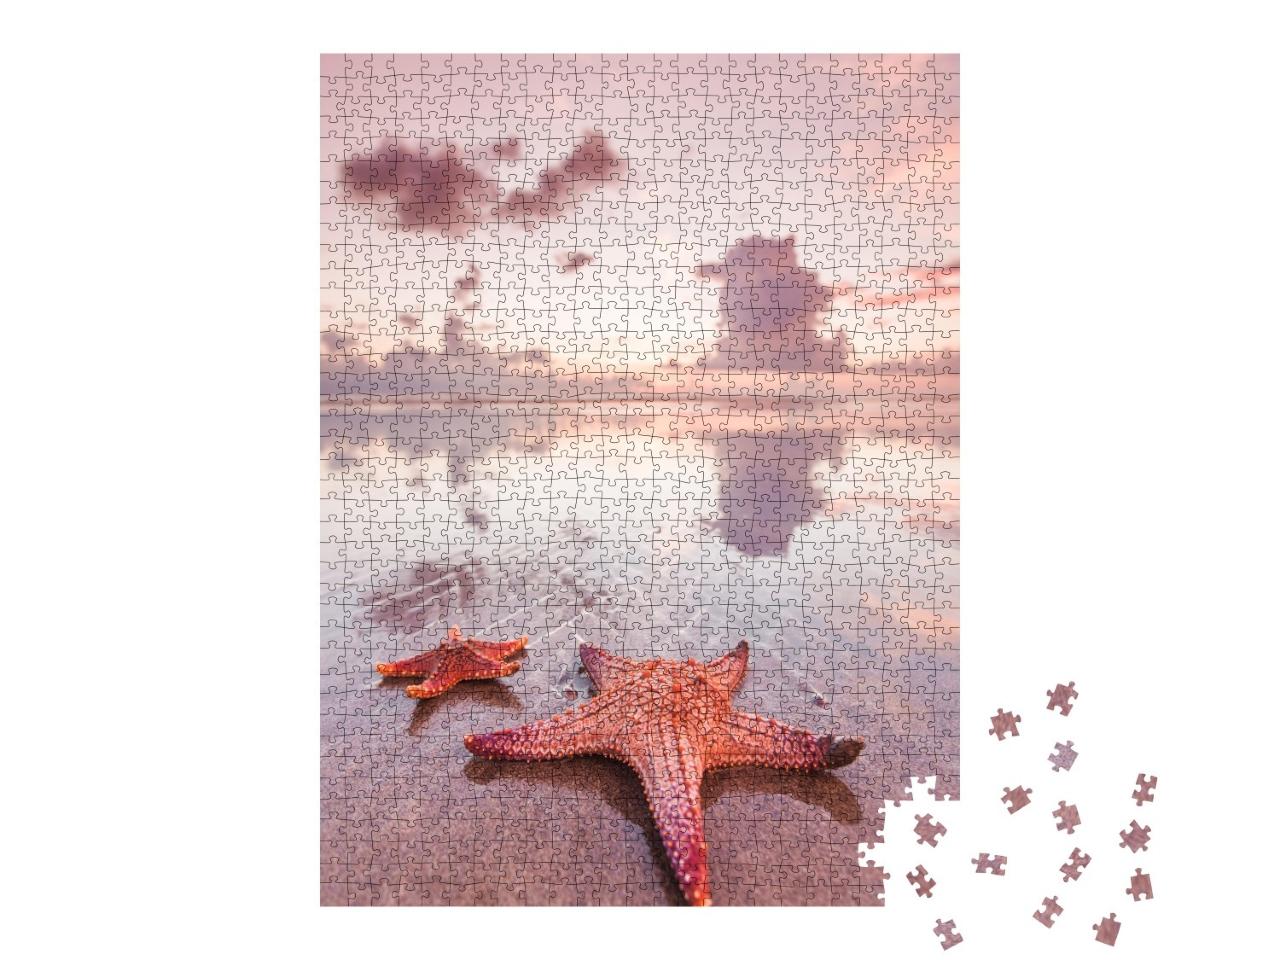 Puzzle de 1000 pièces « Deux étoiles de mer sur la plage, Bali, Double Six Beach »